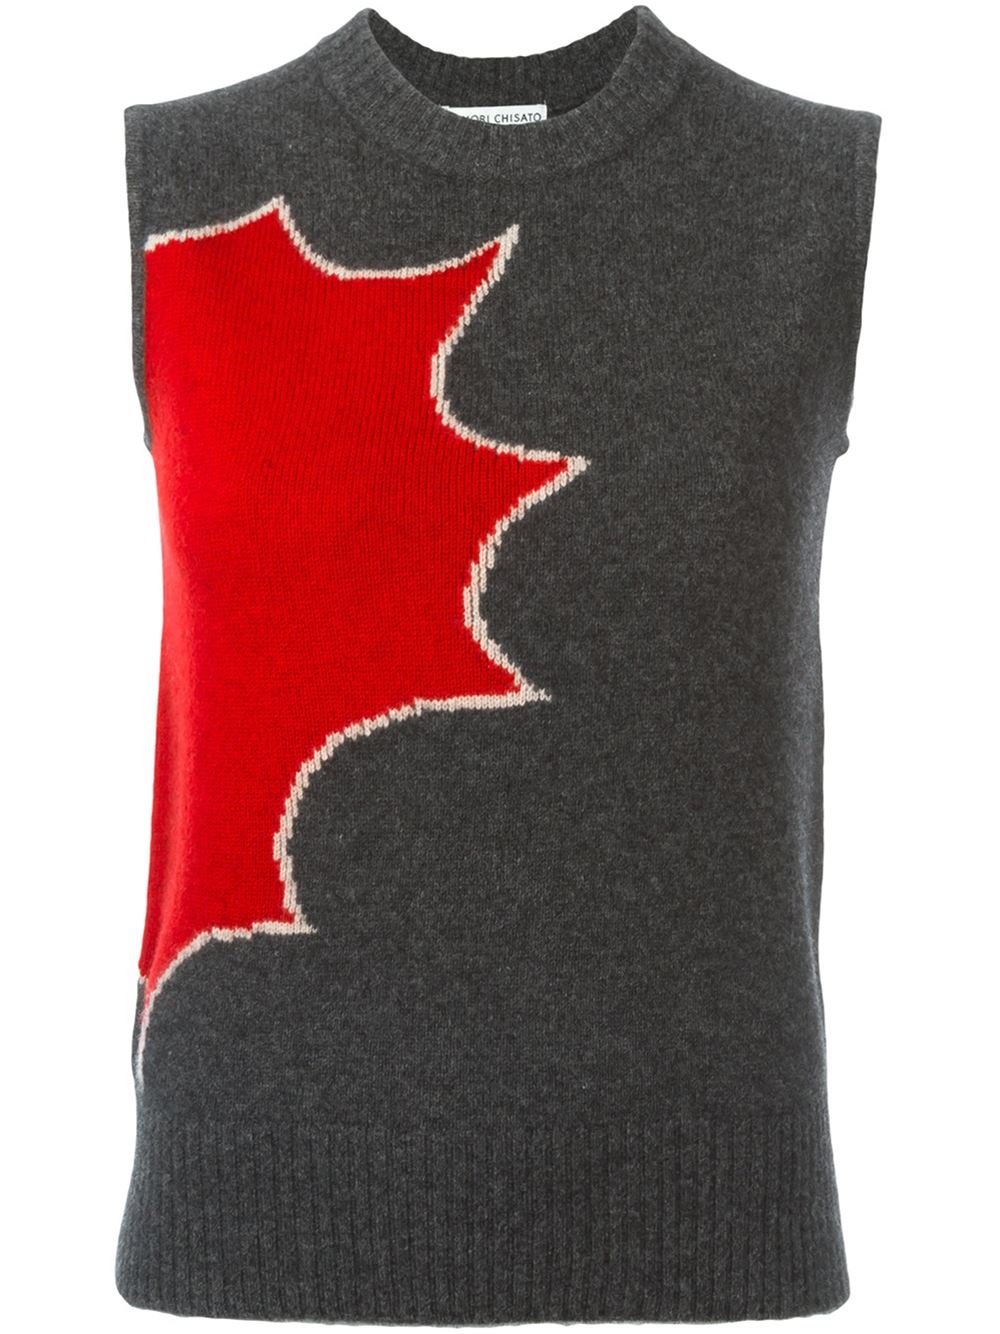  Tsumori Chisato Intarsia Knit Sweater Vest. Farfetch. Was: $337 Now: $134.  